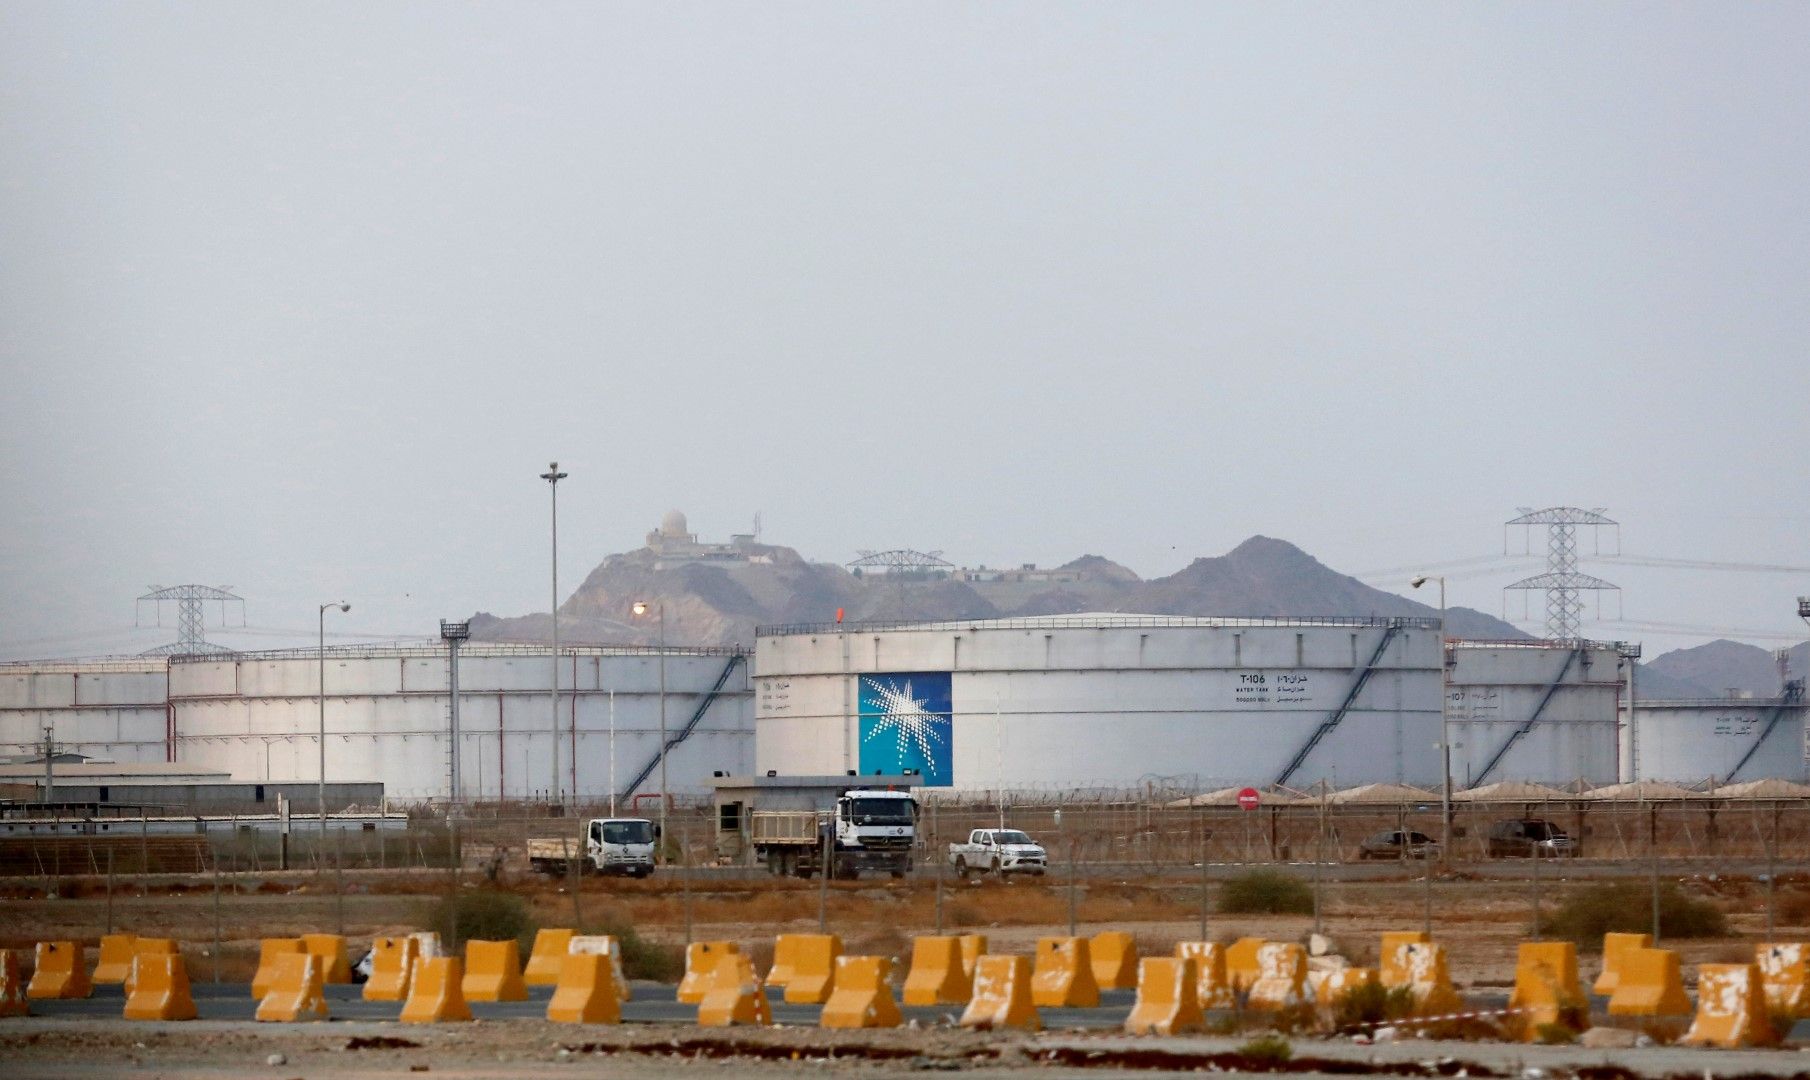 Китайски държавни субекти водят преговори за инвестиране на 5 до 10 млрд. долара в първичното публично предлагане (IPO) на петролния гигант Aramco